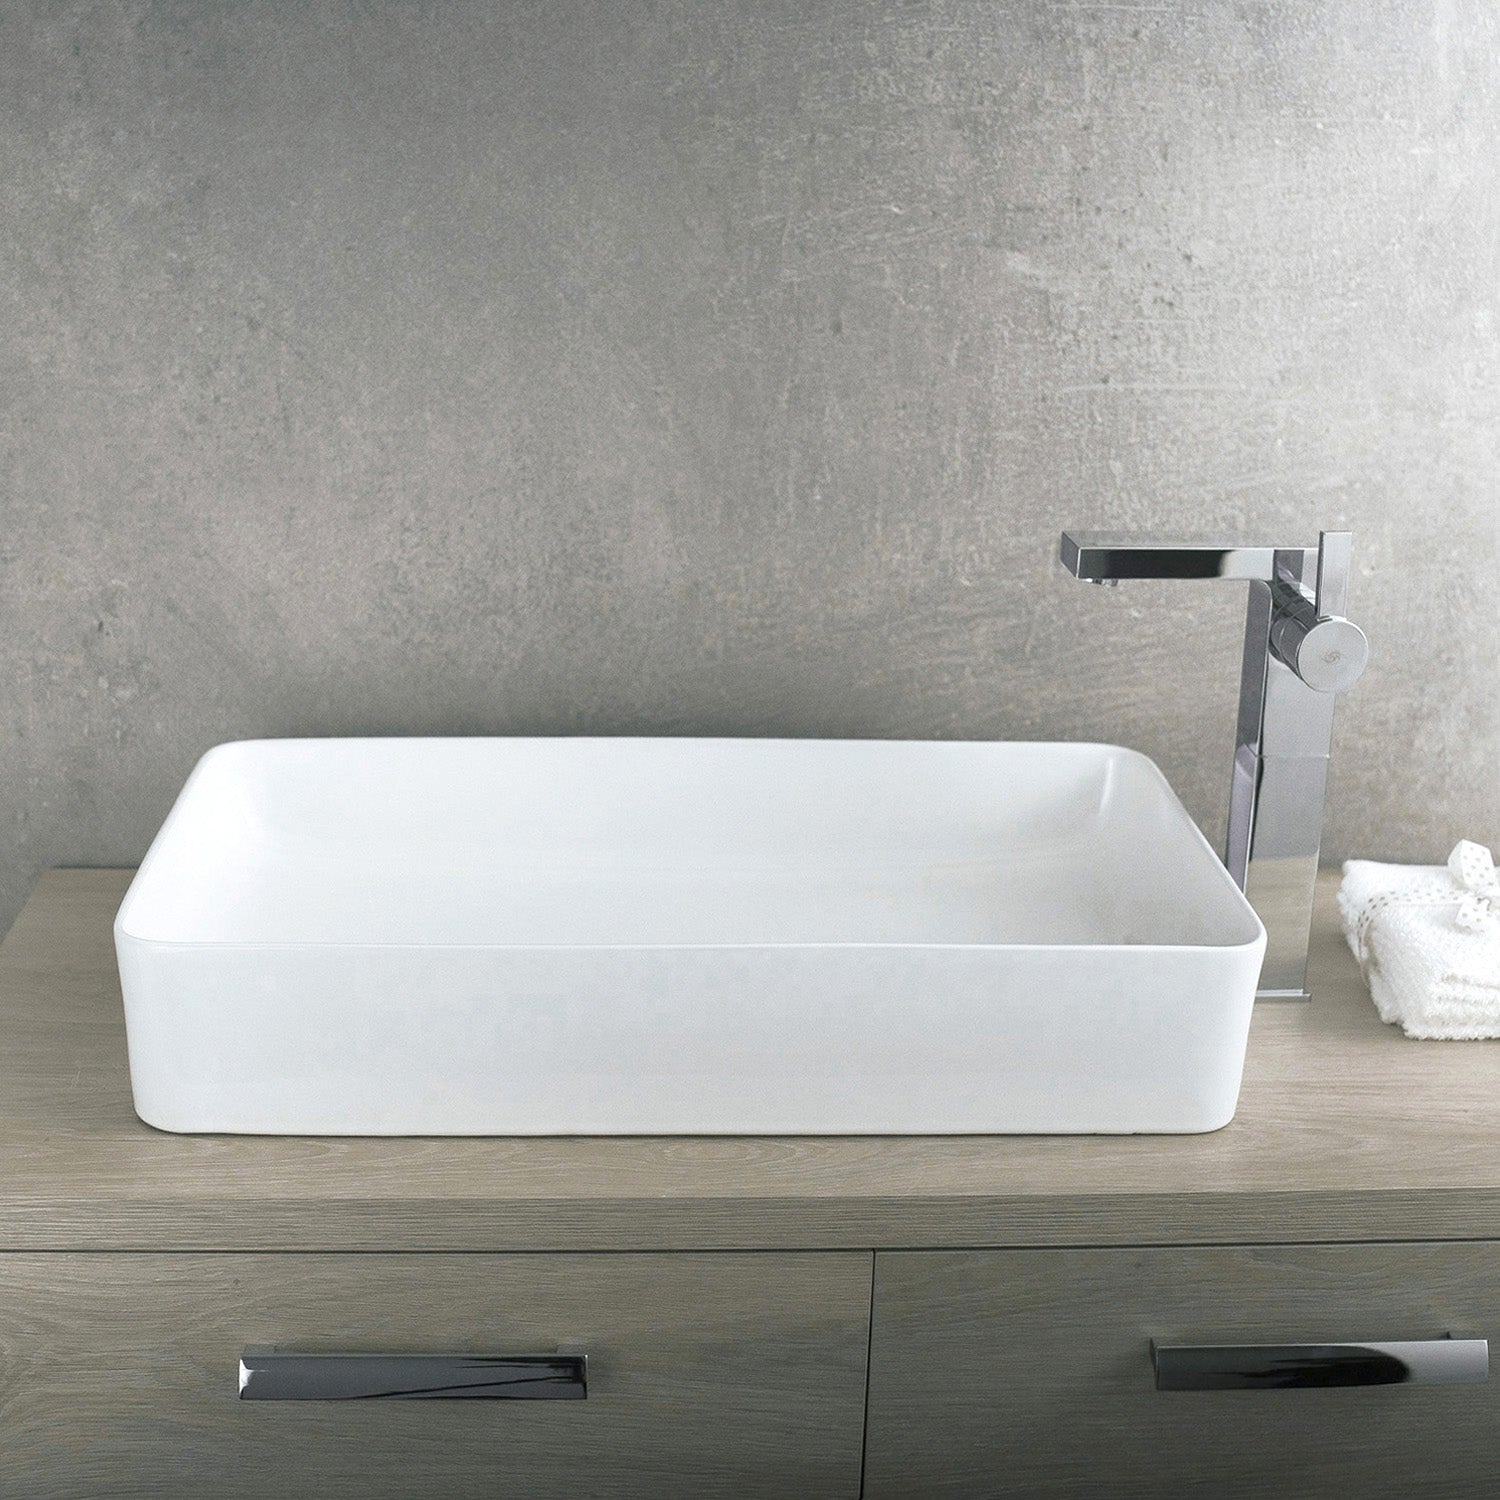 DAX Lavabo rectangular de cerámica para baño de un solo tazón, acabado blanco, 19 x 14-1/2 x 5 pulgadas (BSN-285B)